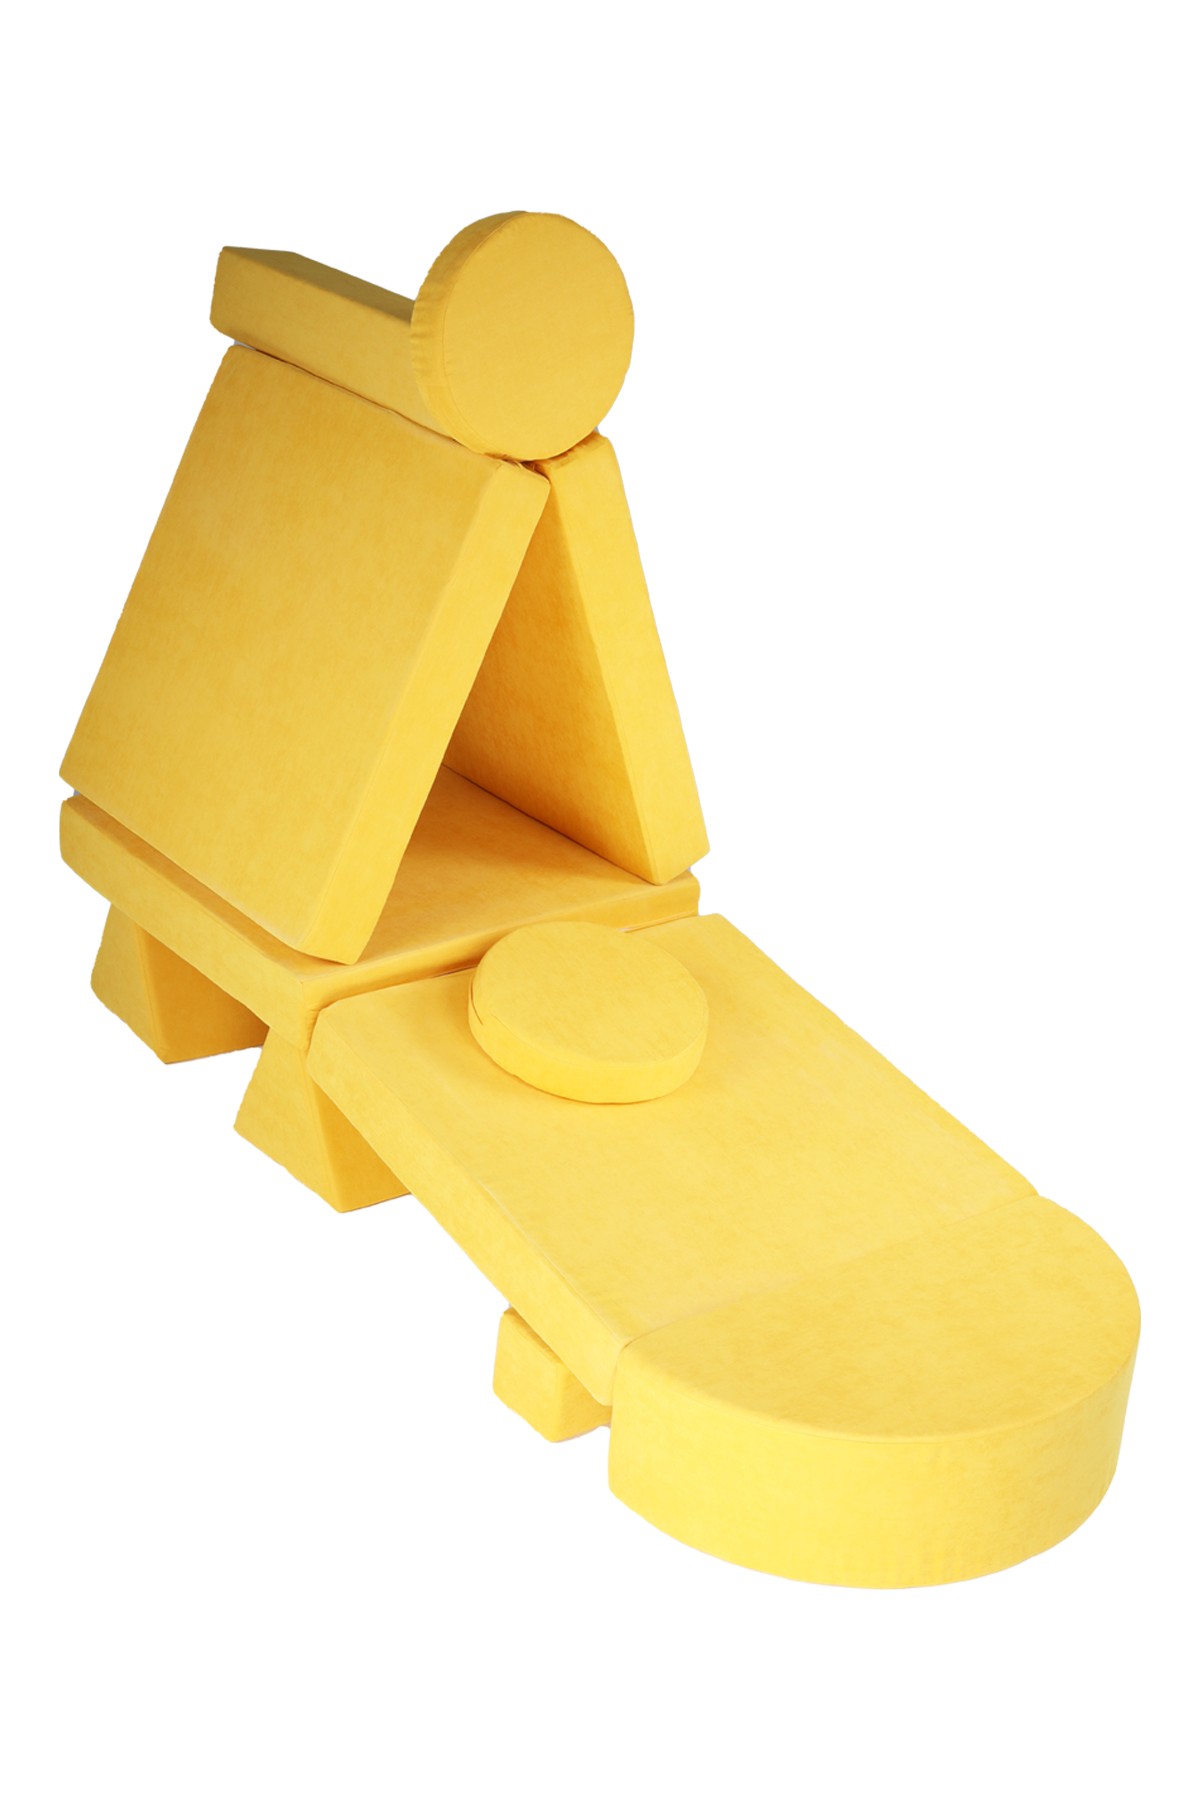 11 Pieces Yellow Puzzle Sponge